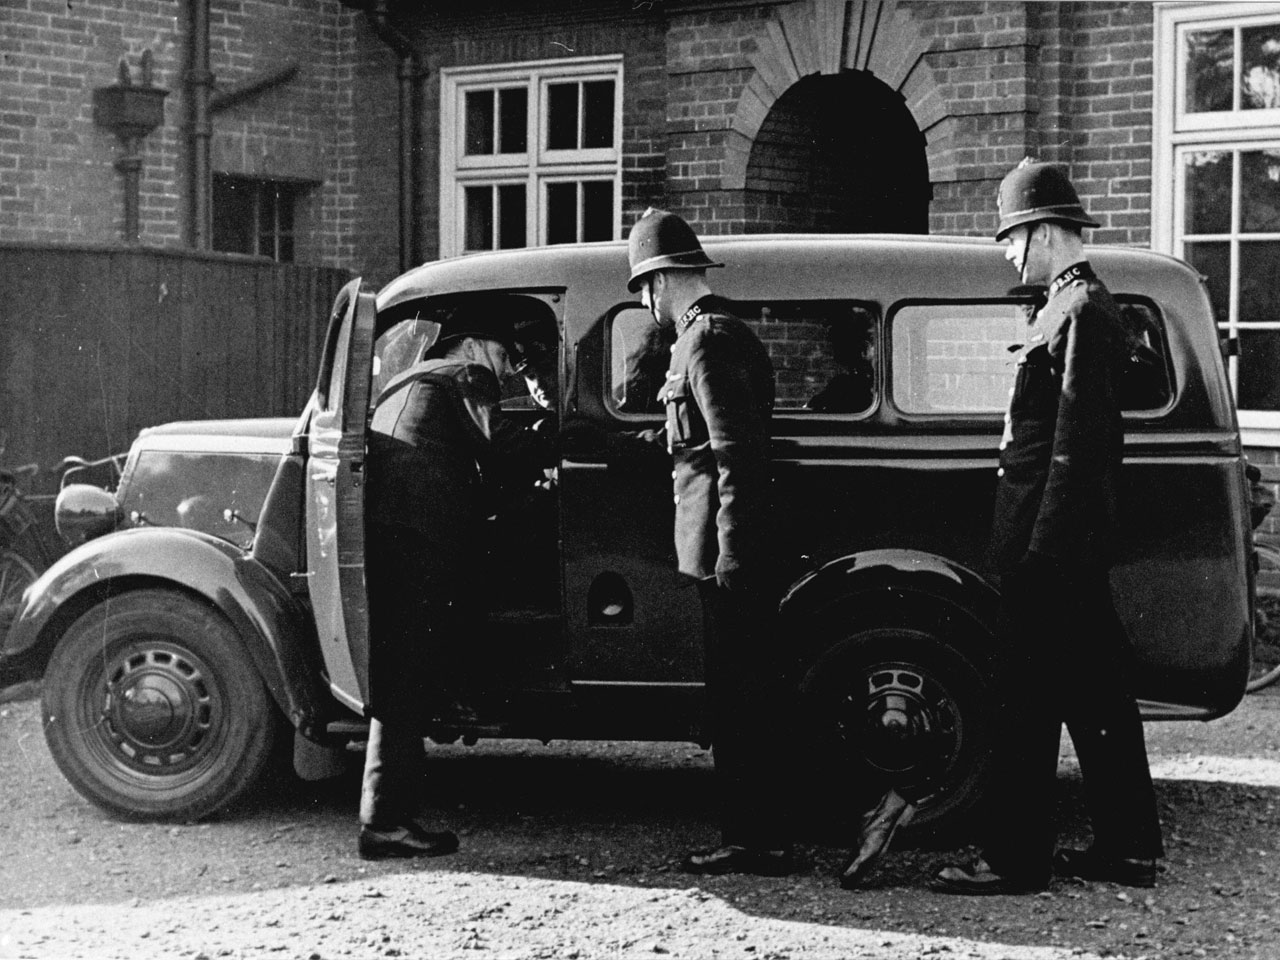 1950's Police Car